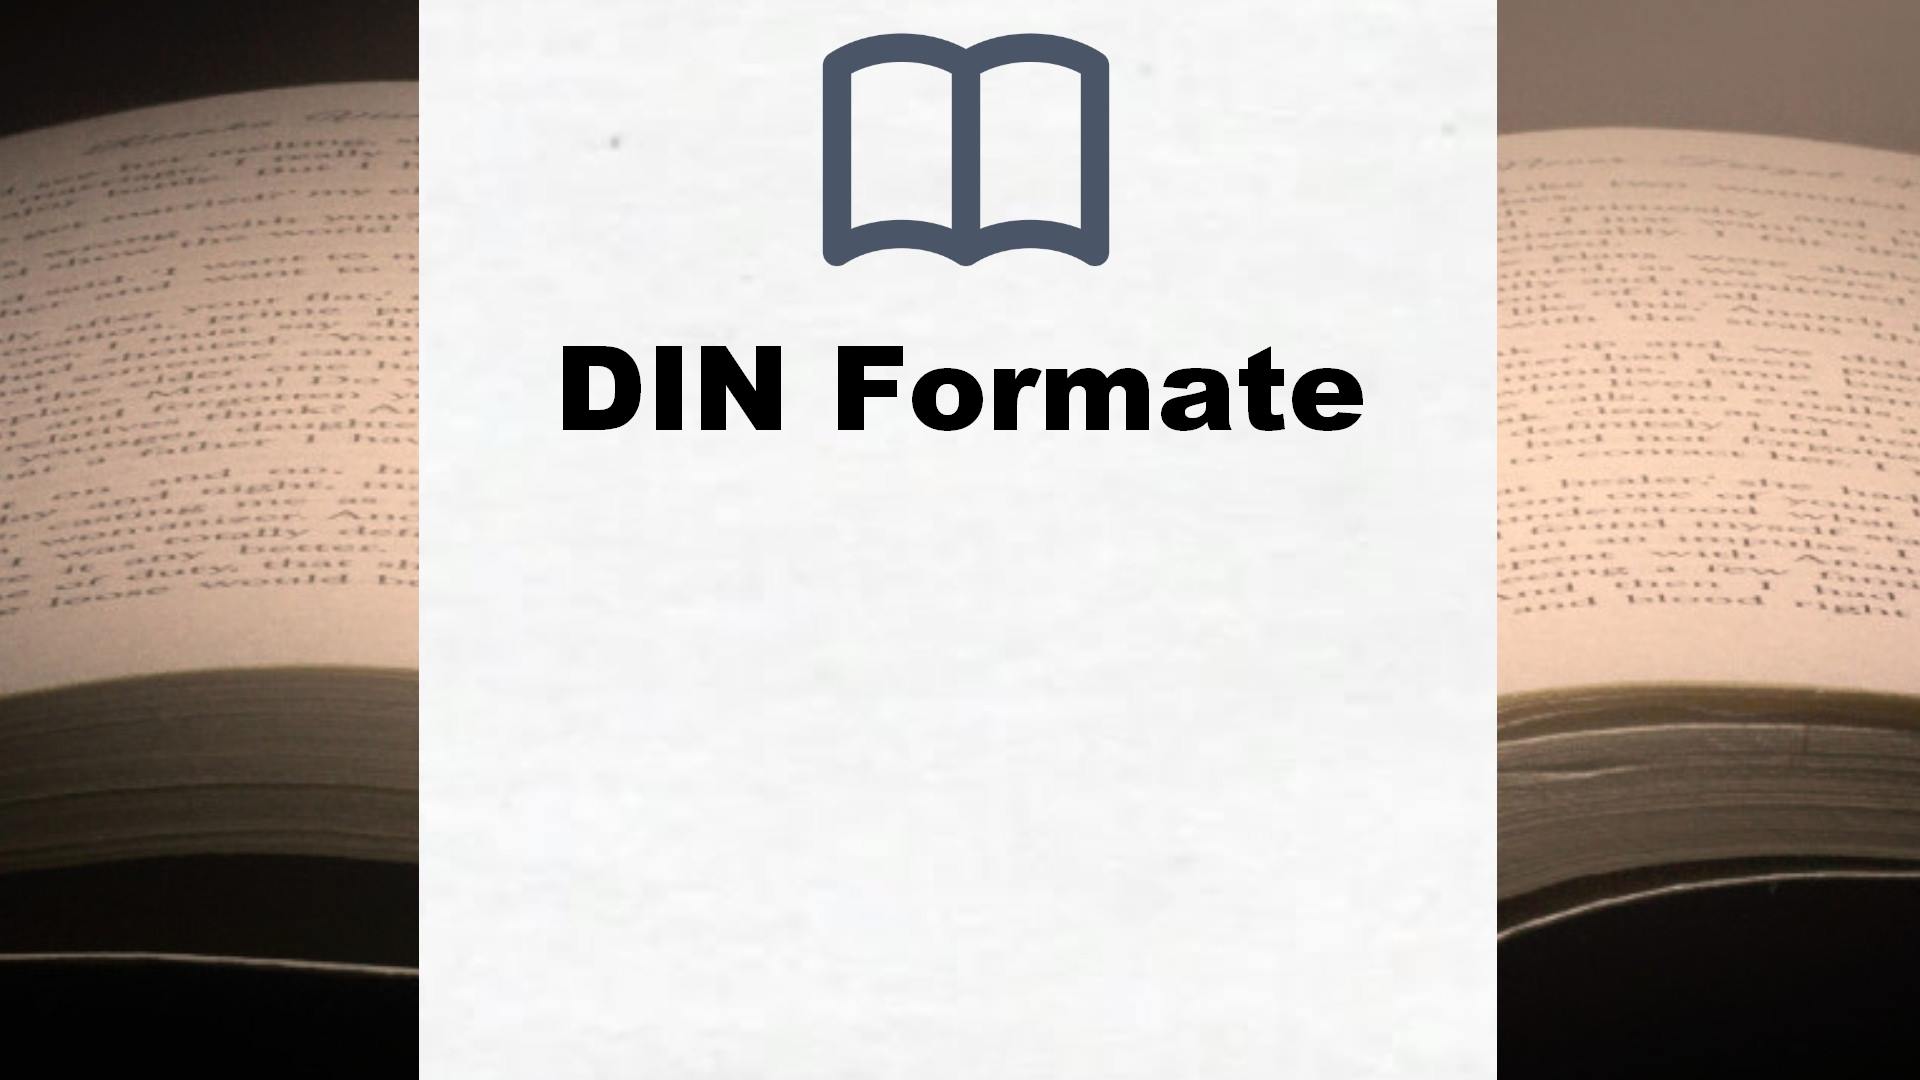 Bücher über DIN Formate